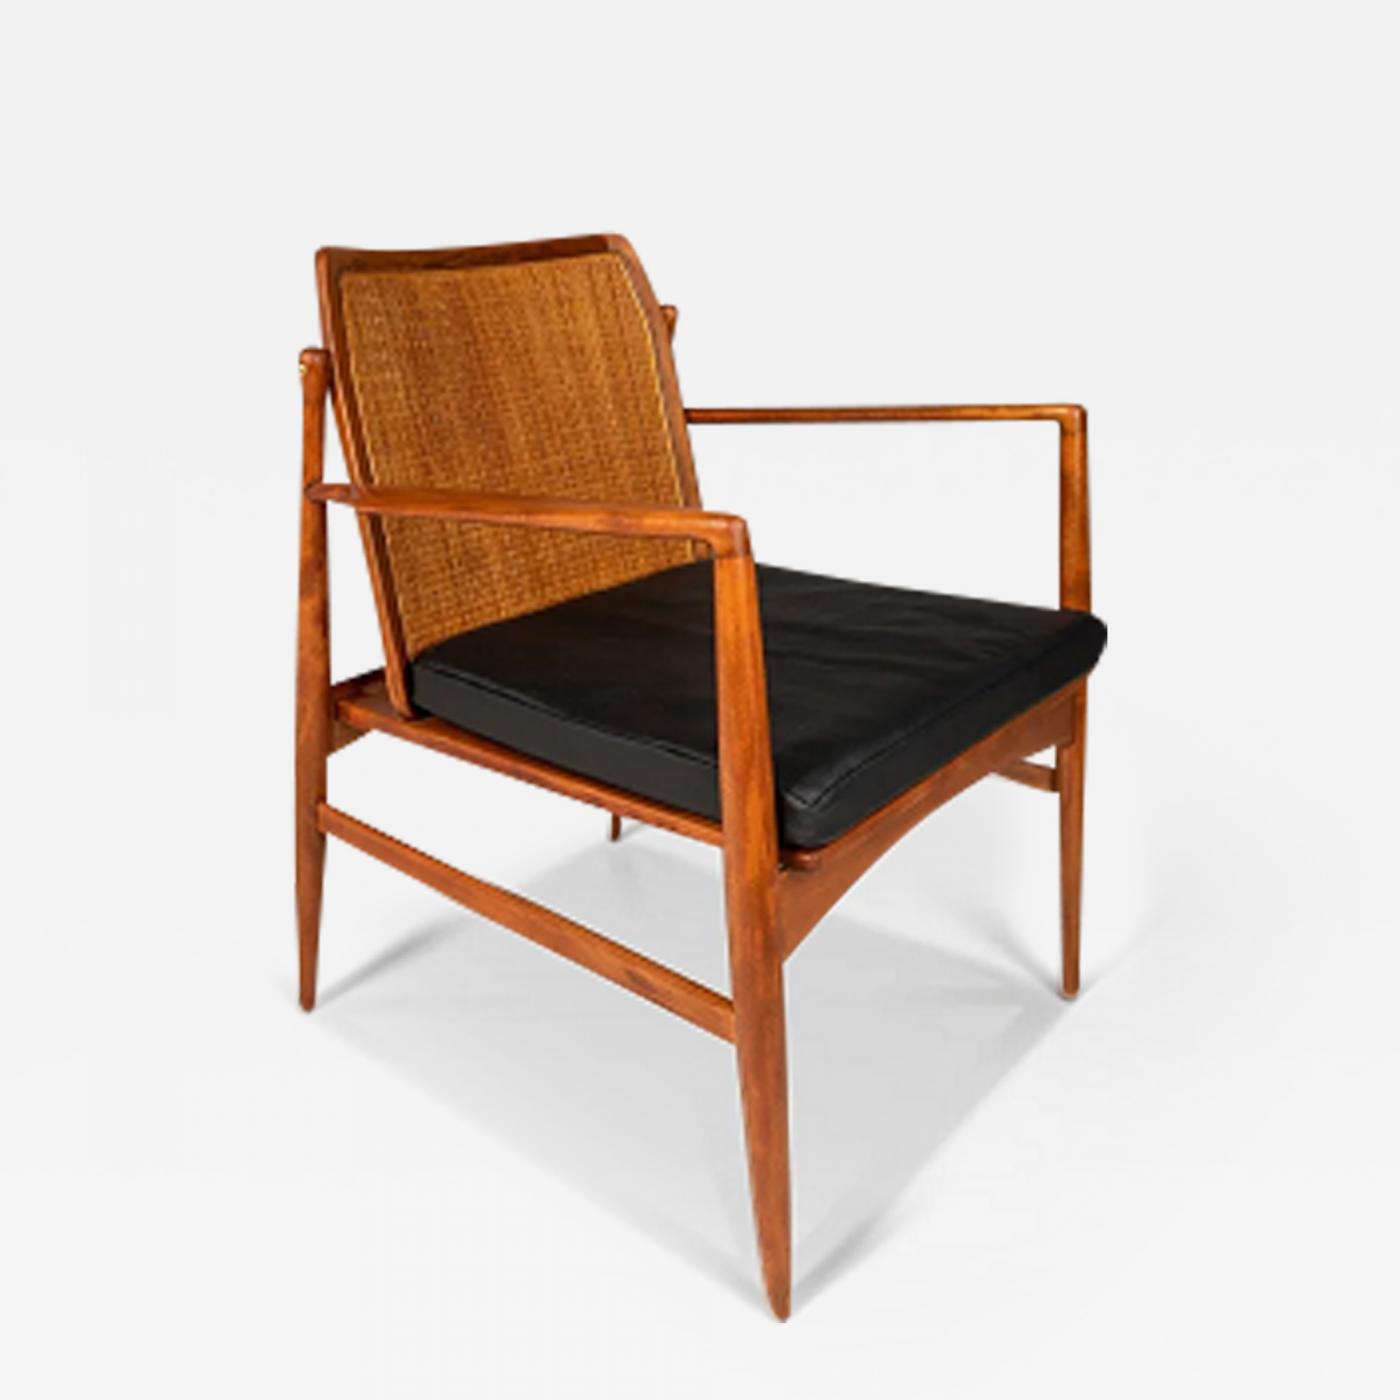 Ib Kofod-Larsen - Danish Modern Lounge Chair w/ Cane Back by Ib Kofod Larsen